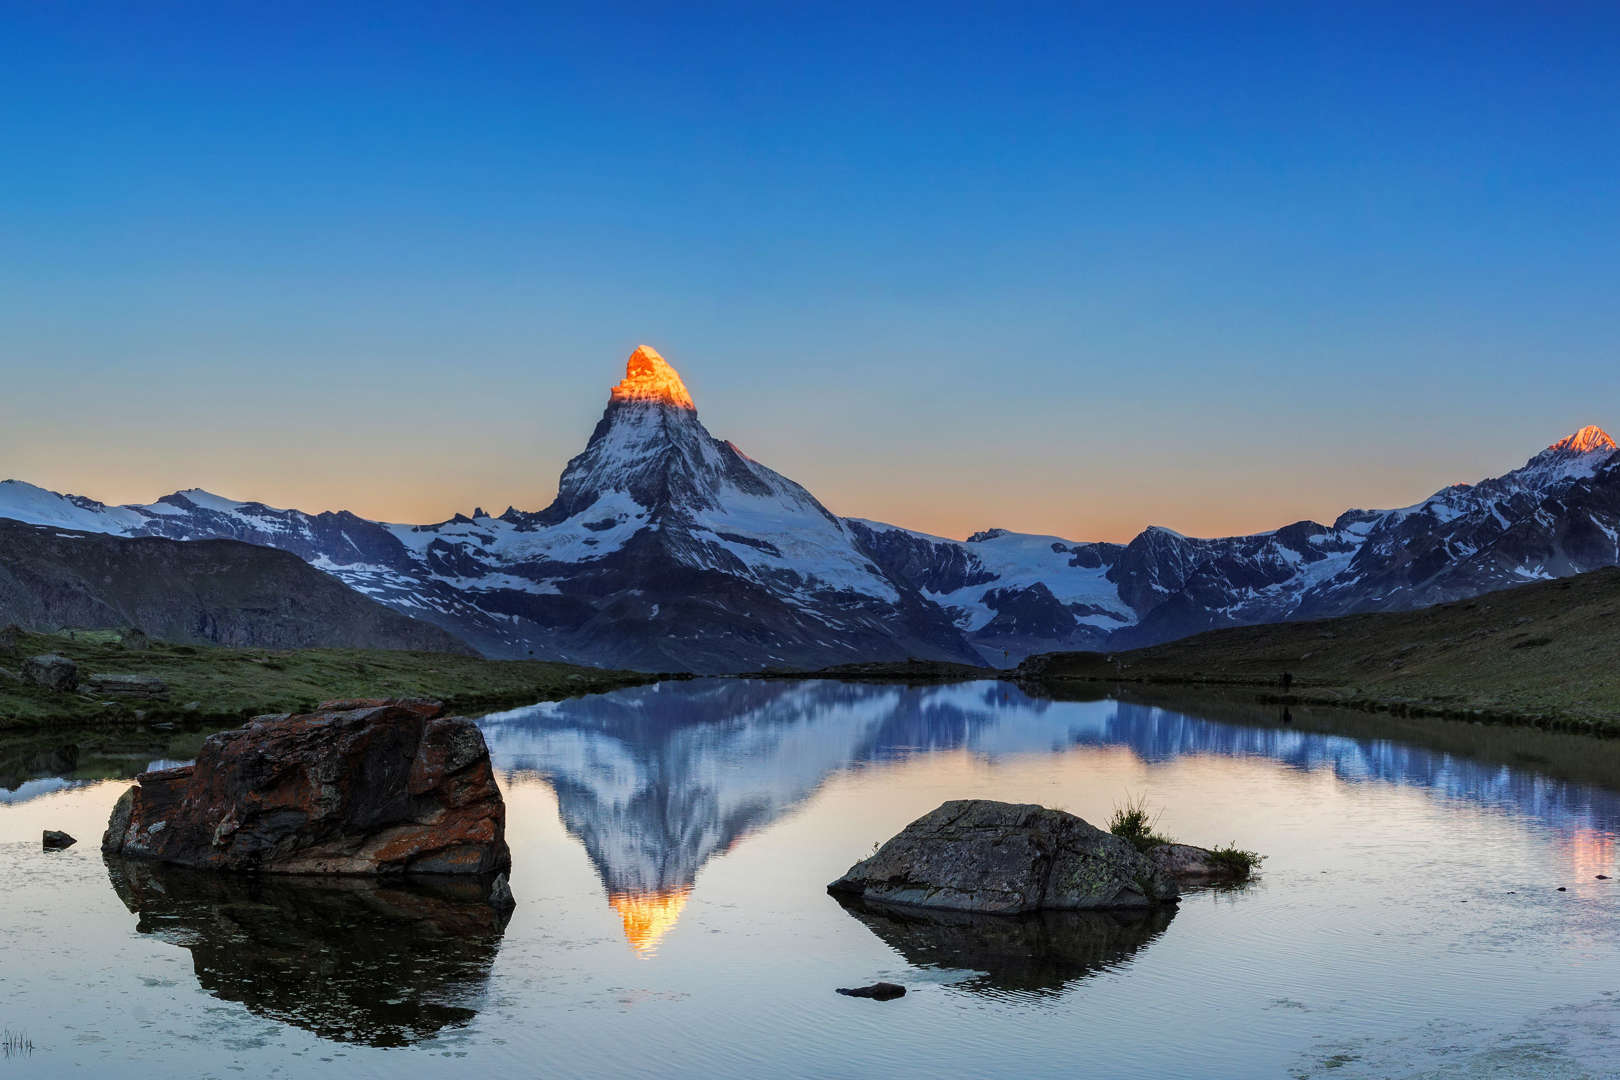 슬라이드 8/11: The four distinct faces of the uniquely shaped Matterhorn align with the four cardinal directions - north, east, south, and west.